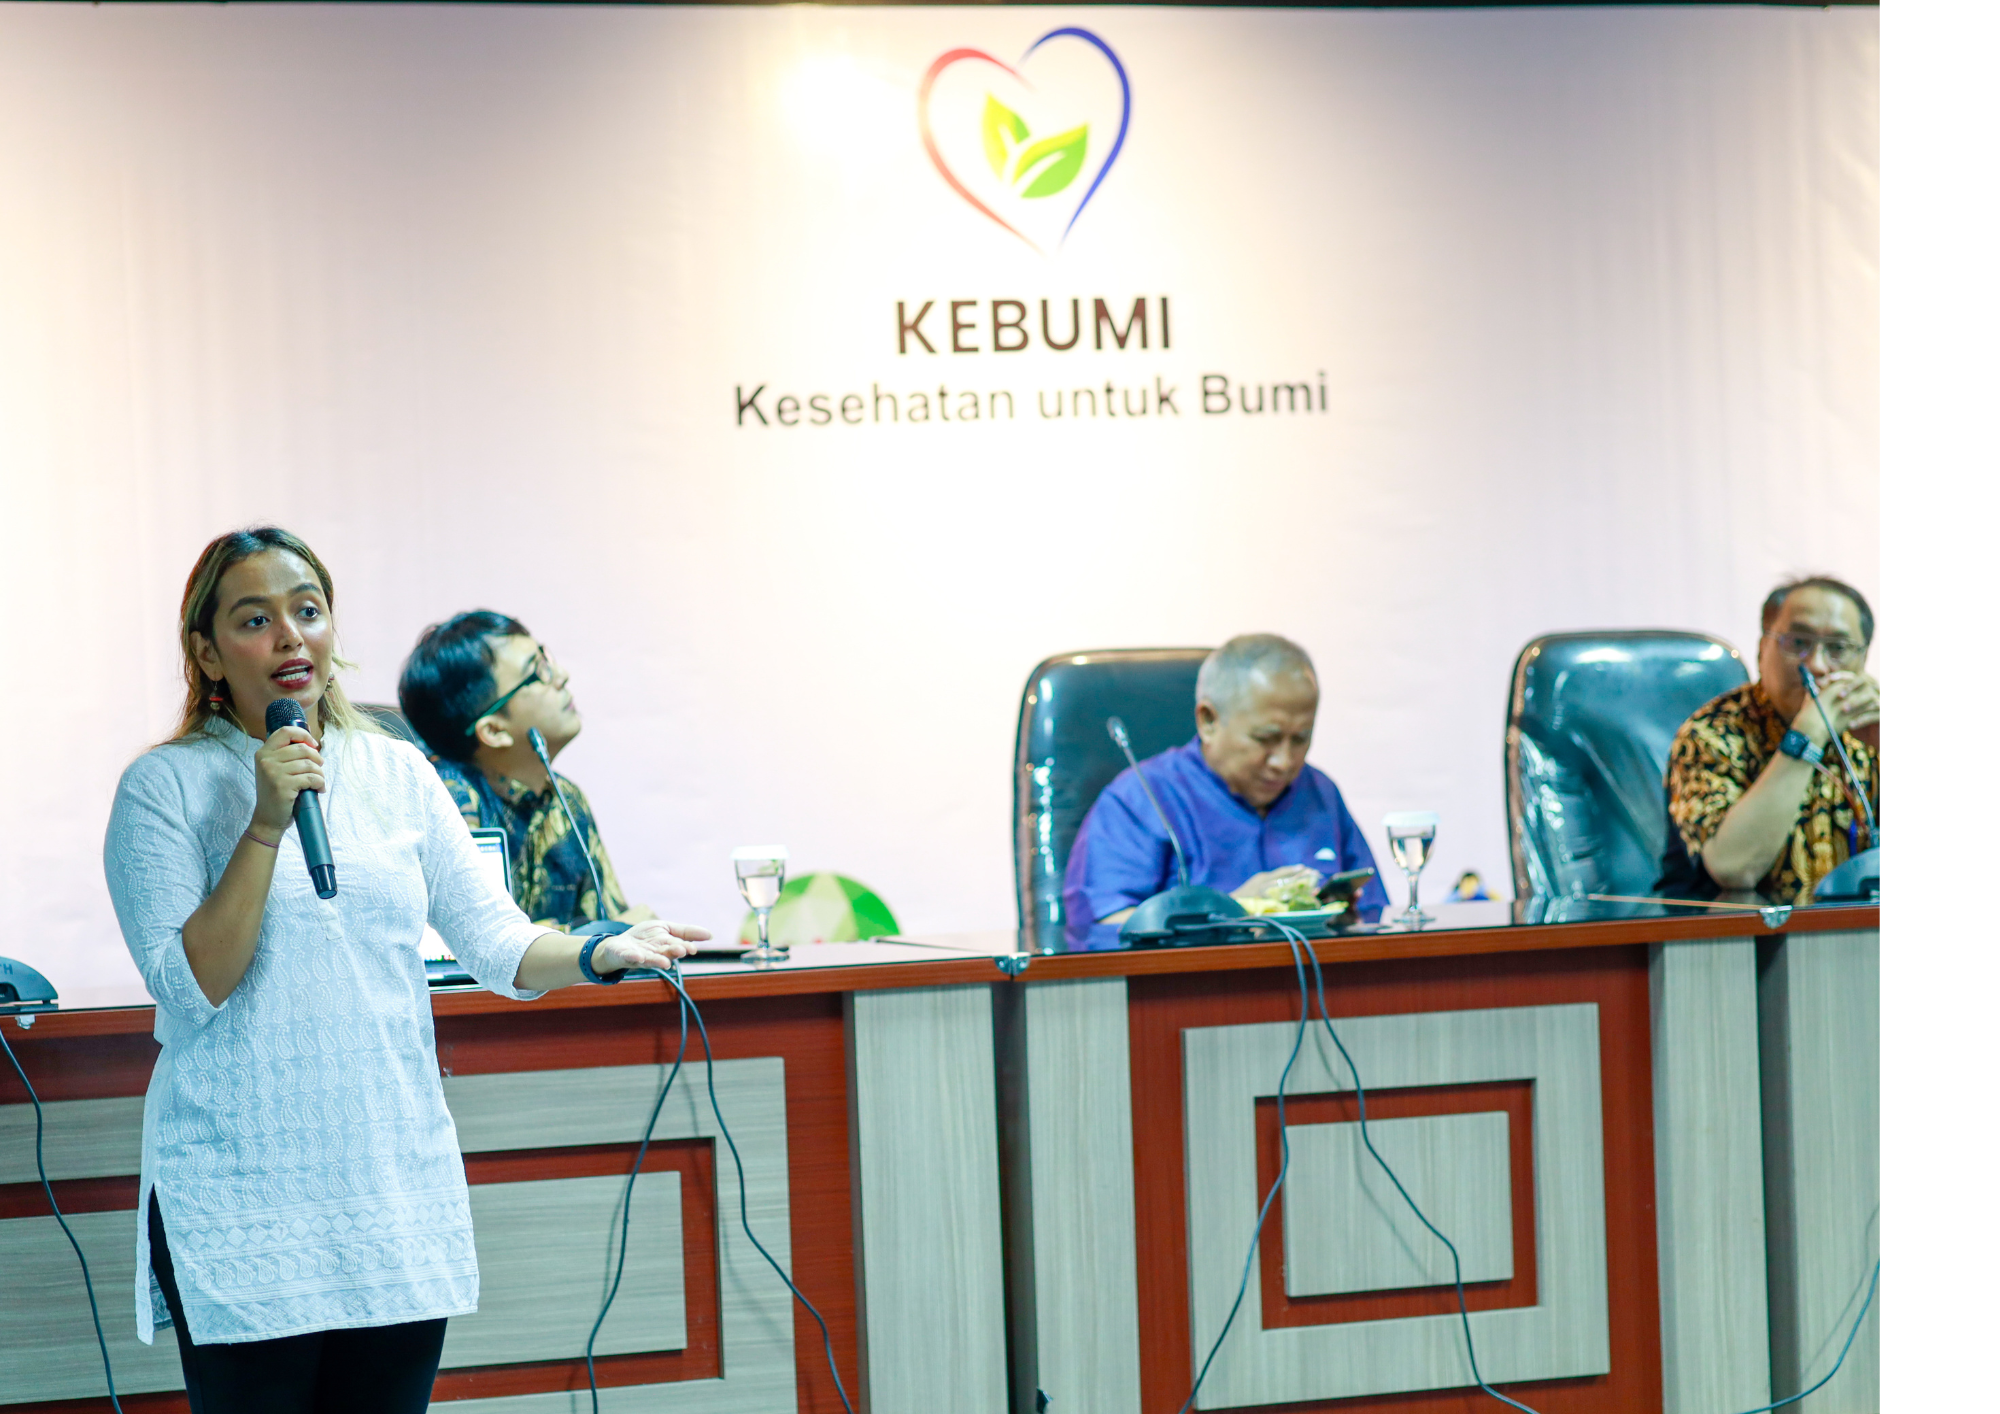 KEBUMI Indonesia - Manjit JIT Sohal